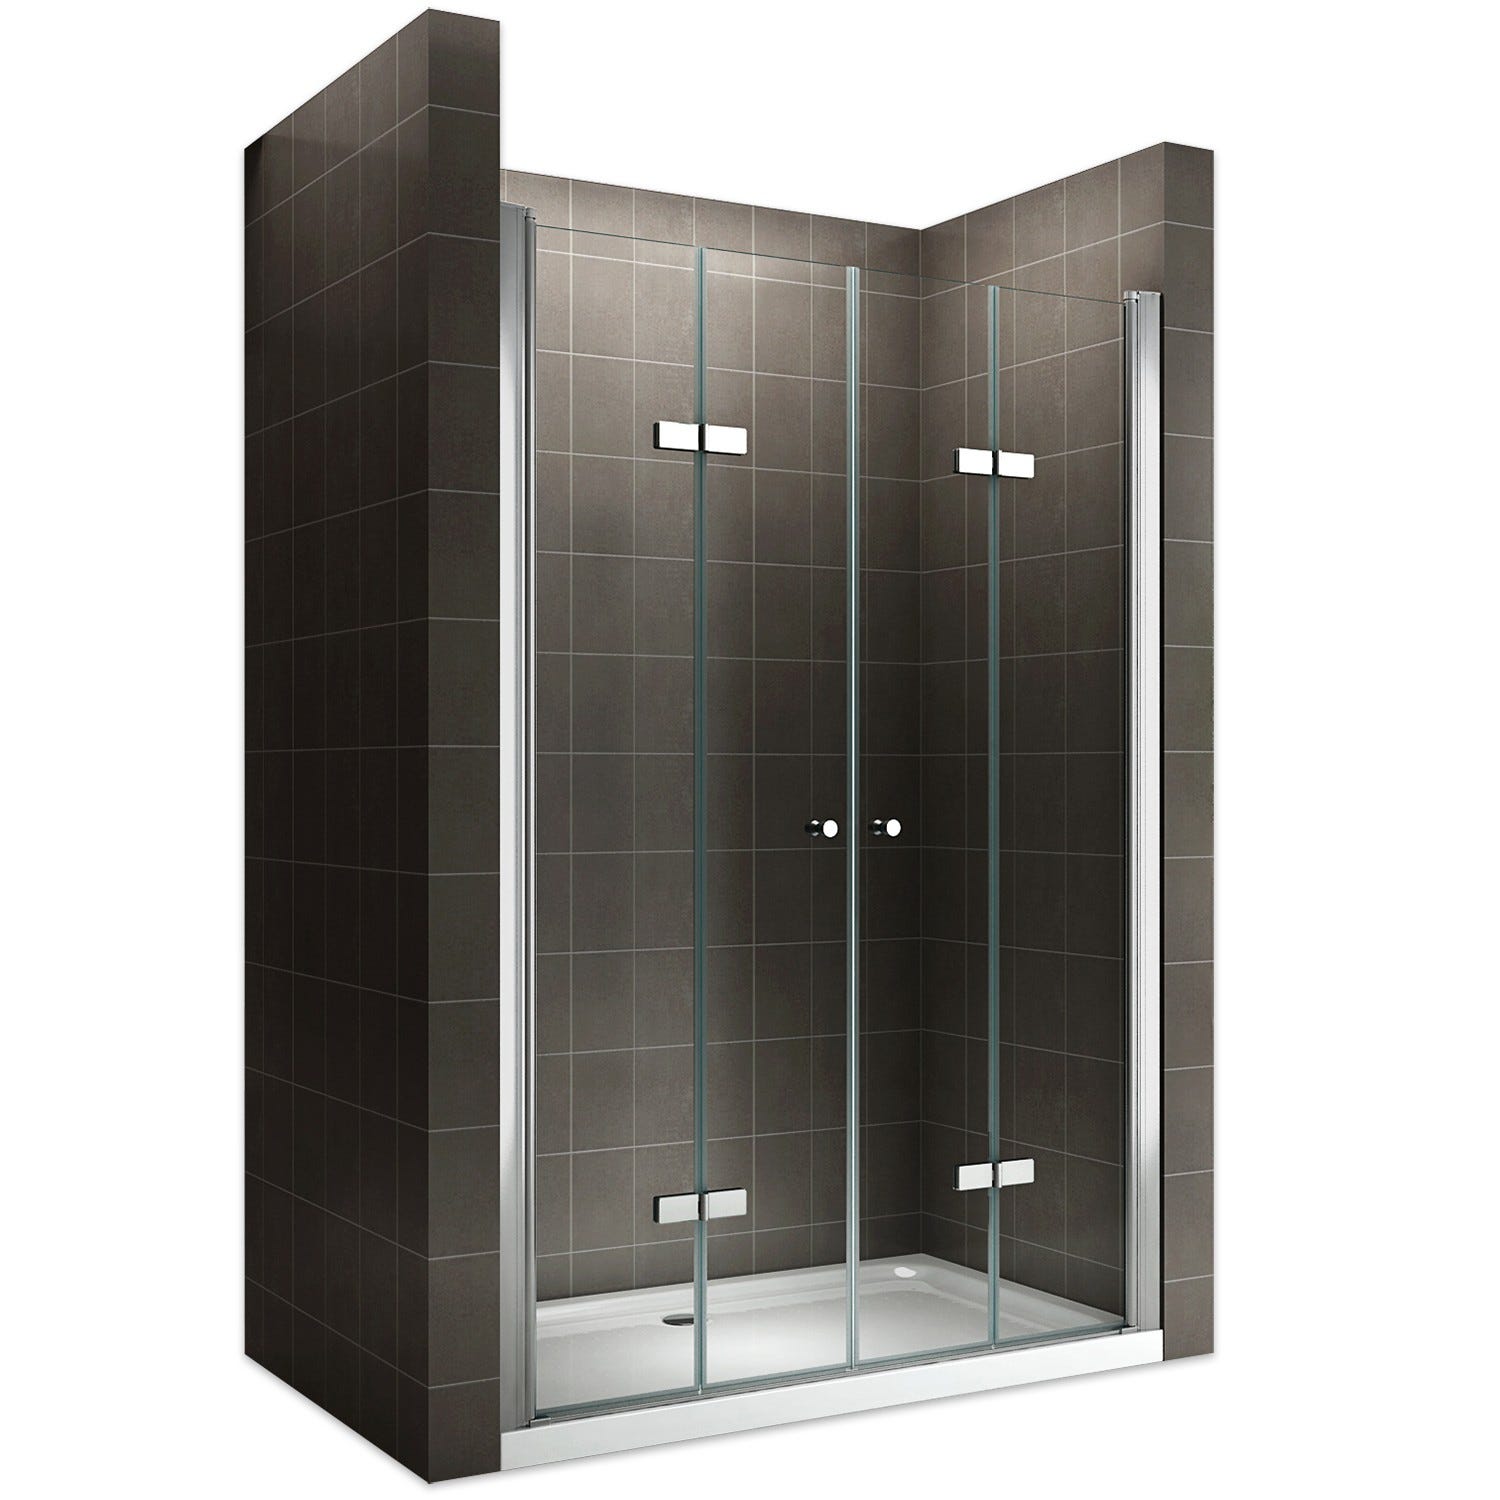 EMMY Porte de douche pliante pivotante H 195 cm largeur réglable 156 à 160 cm verre transparent 0